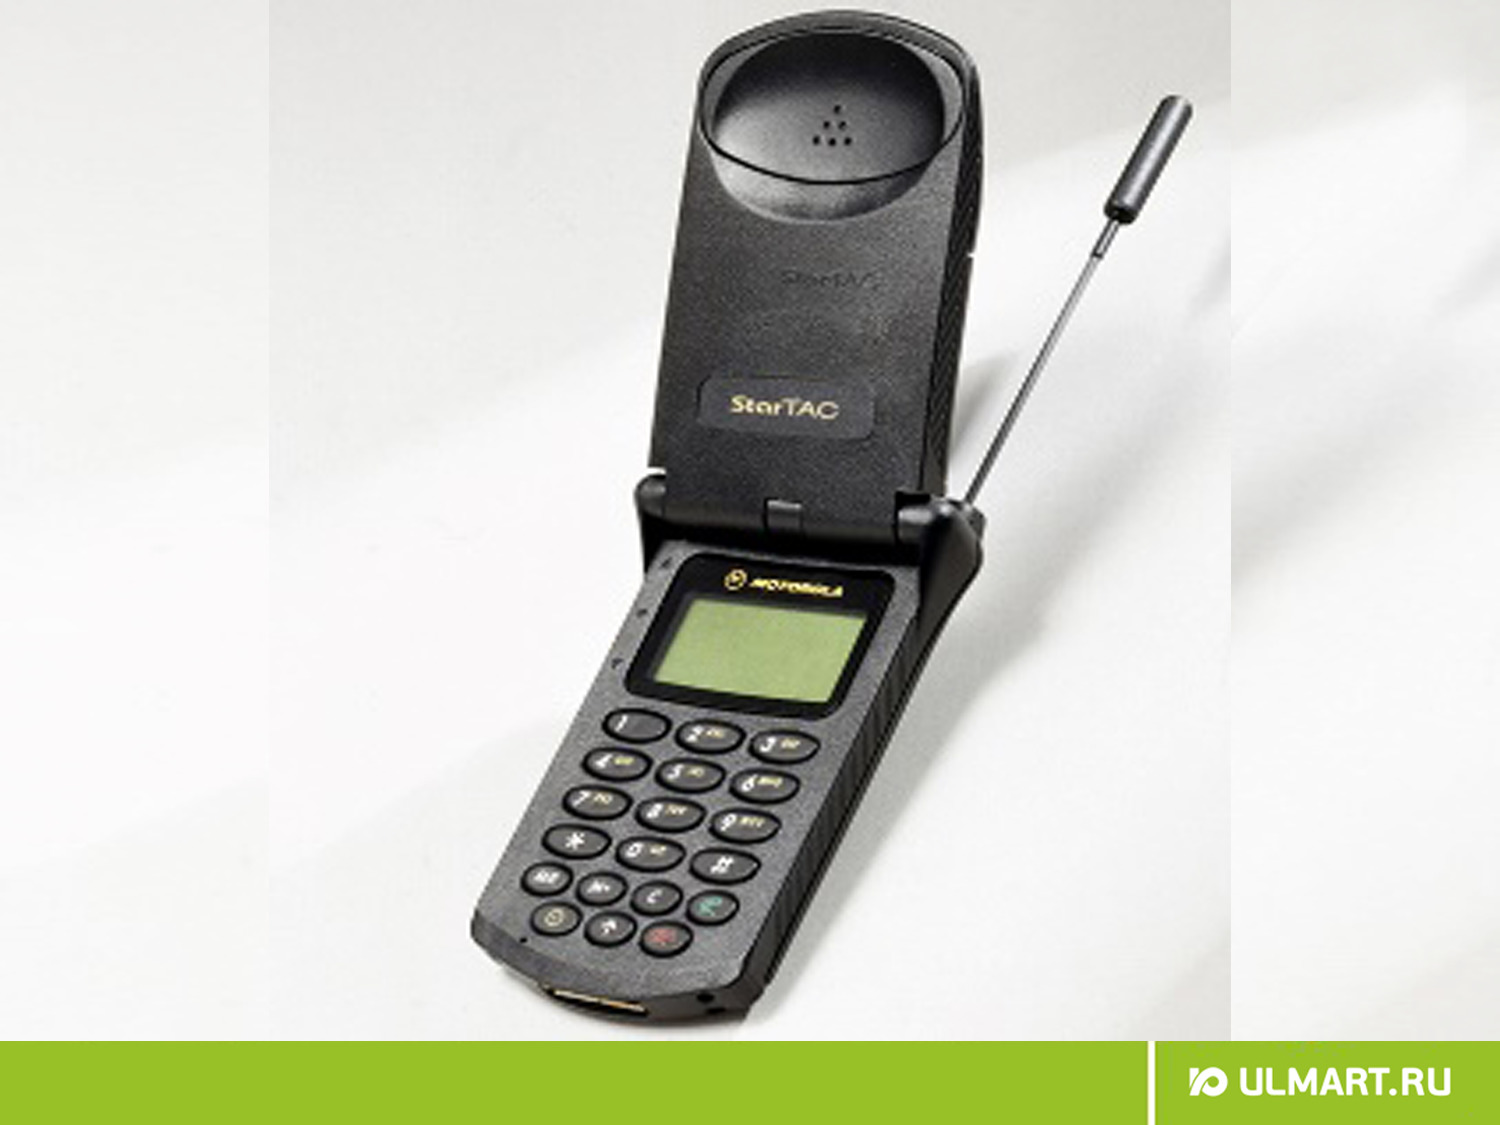 Motorola STARTAC 1996